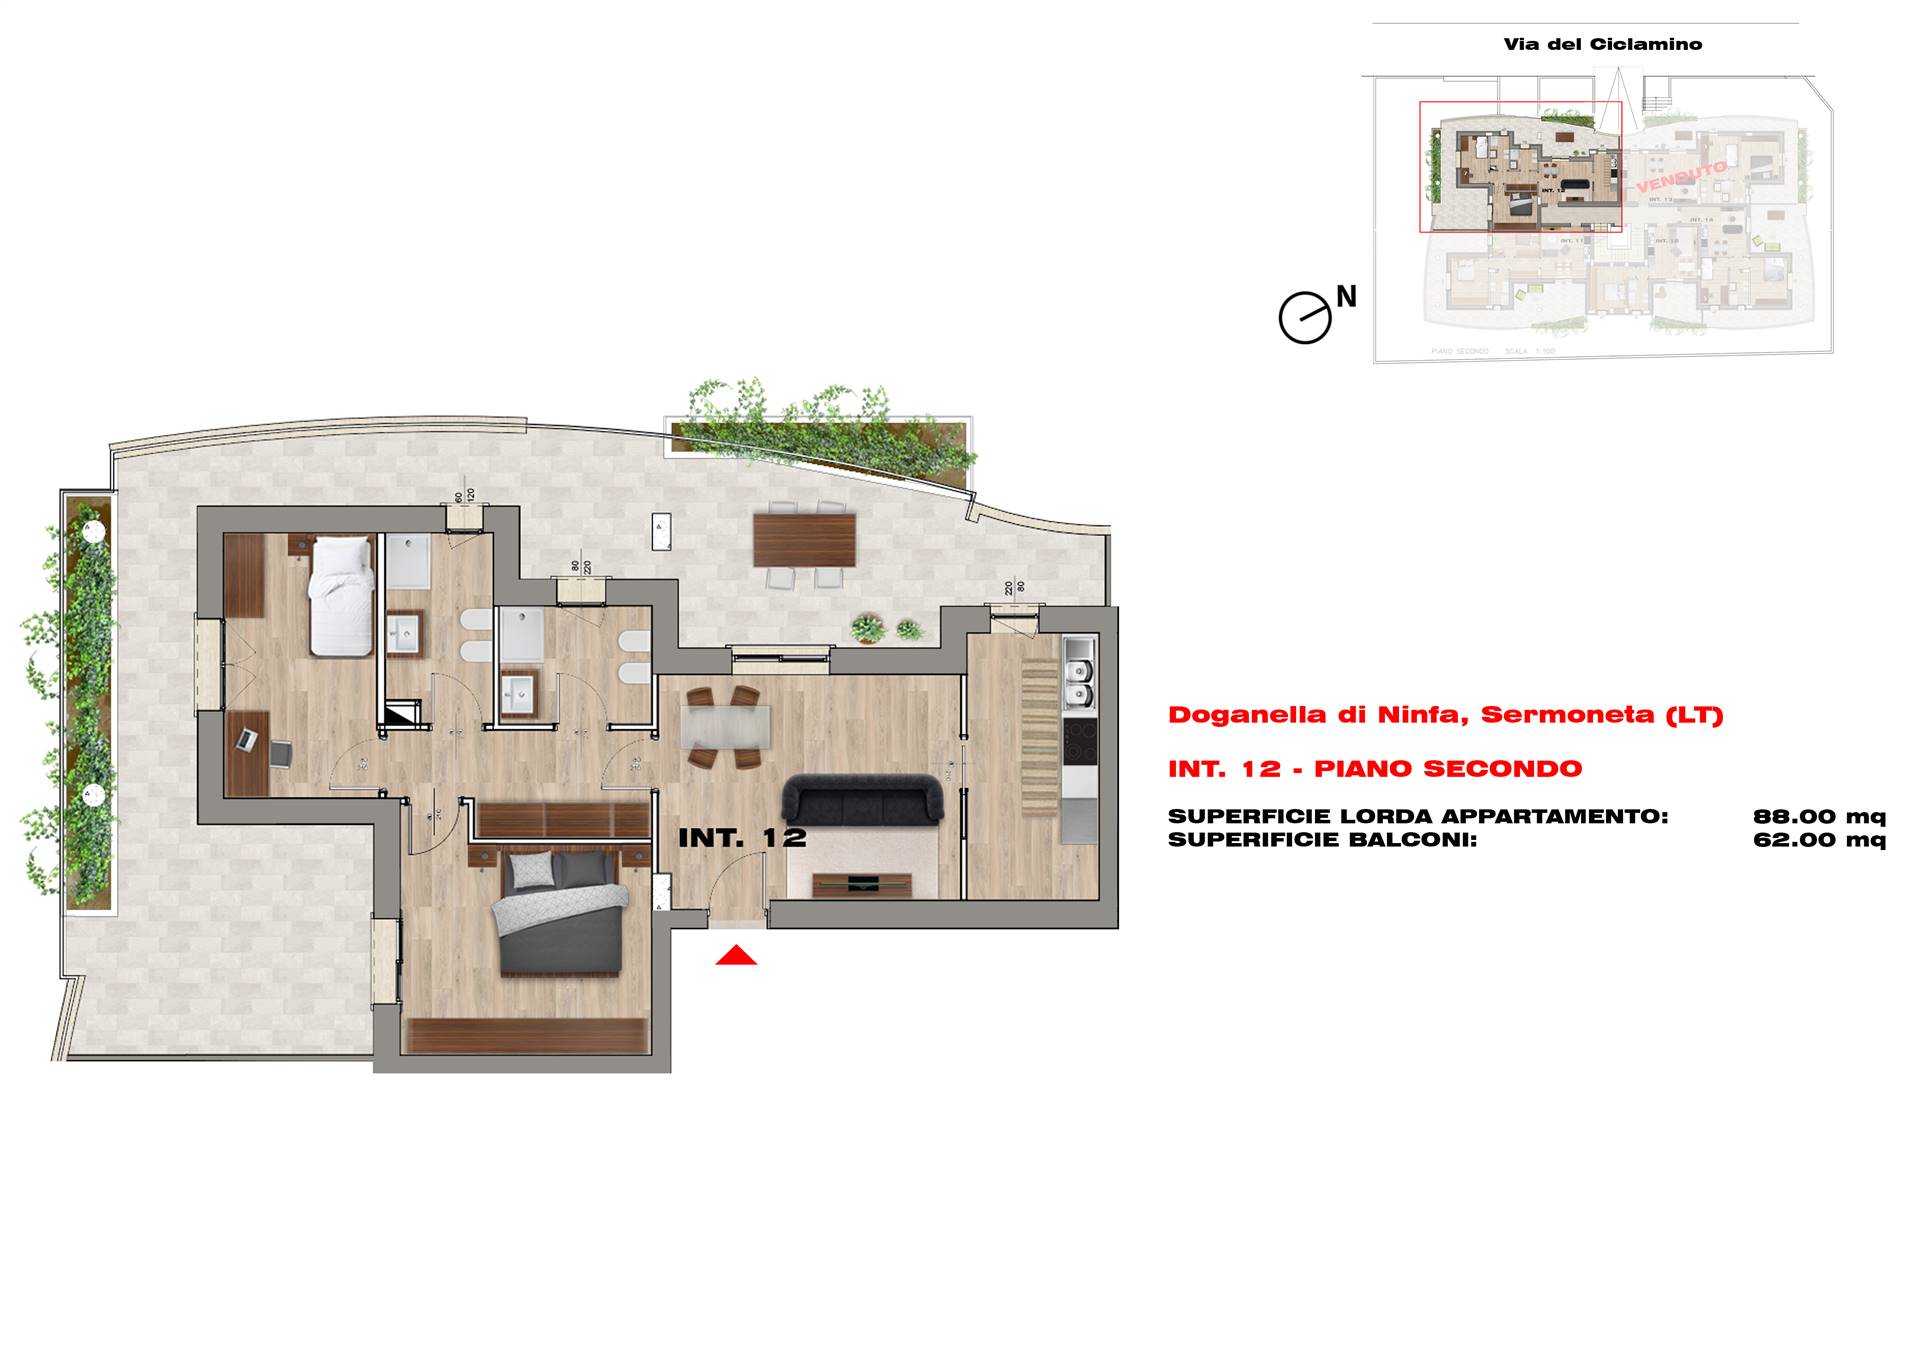 BIVIO DI DOGANELLA, SERMONETA, Appartamento in vendita di 88 Mq, Nuova costruzione, Riscaldamento Centralizzato, posto al piano 2° su 3, composto da: 